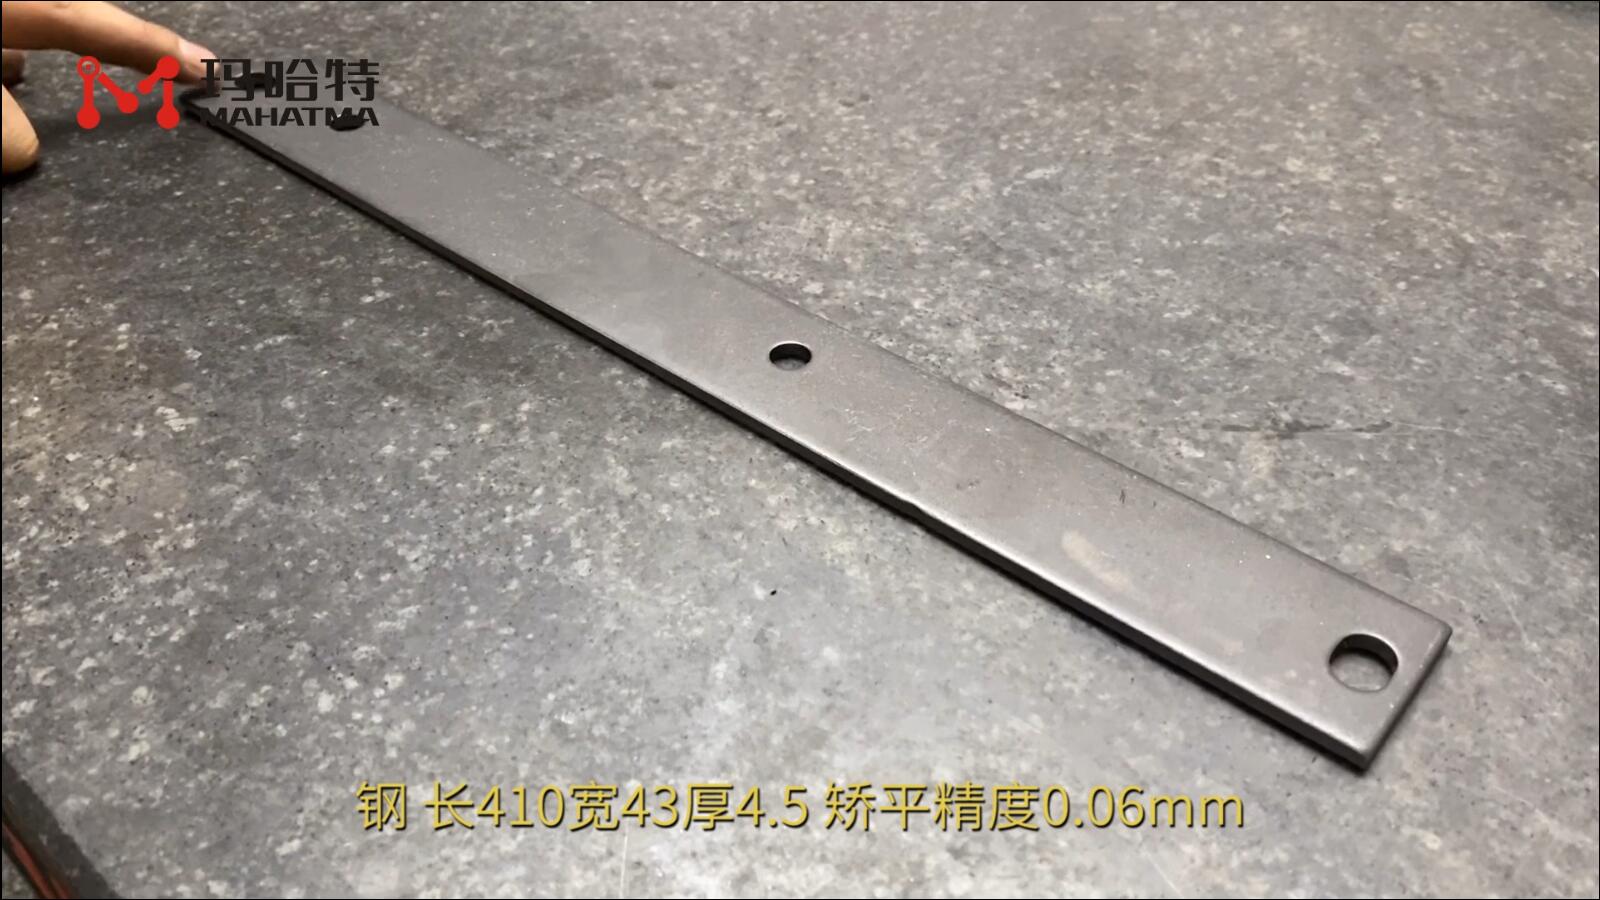 钢 MHT60-600 长方形 长410宽43厚4.5mm